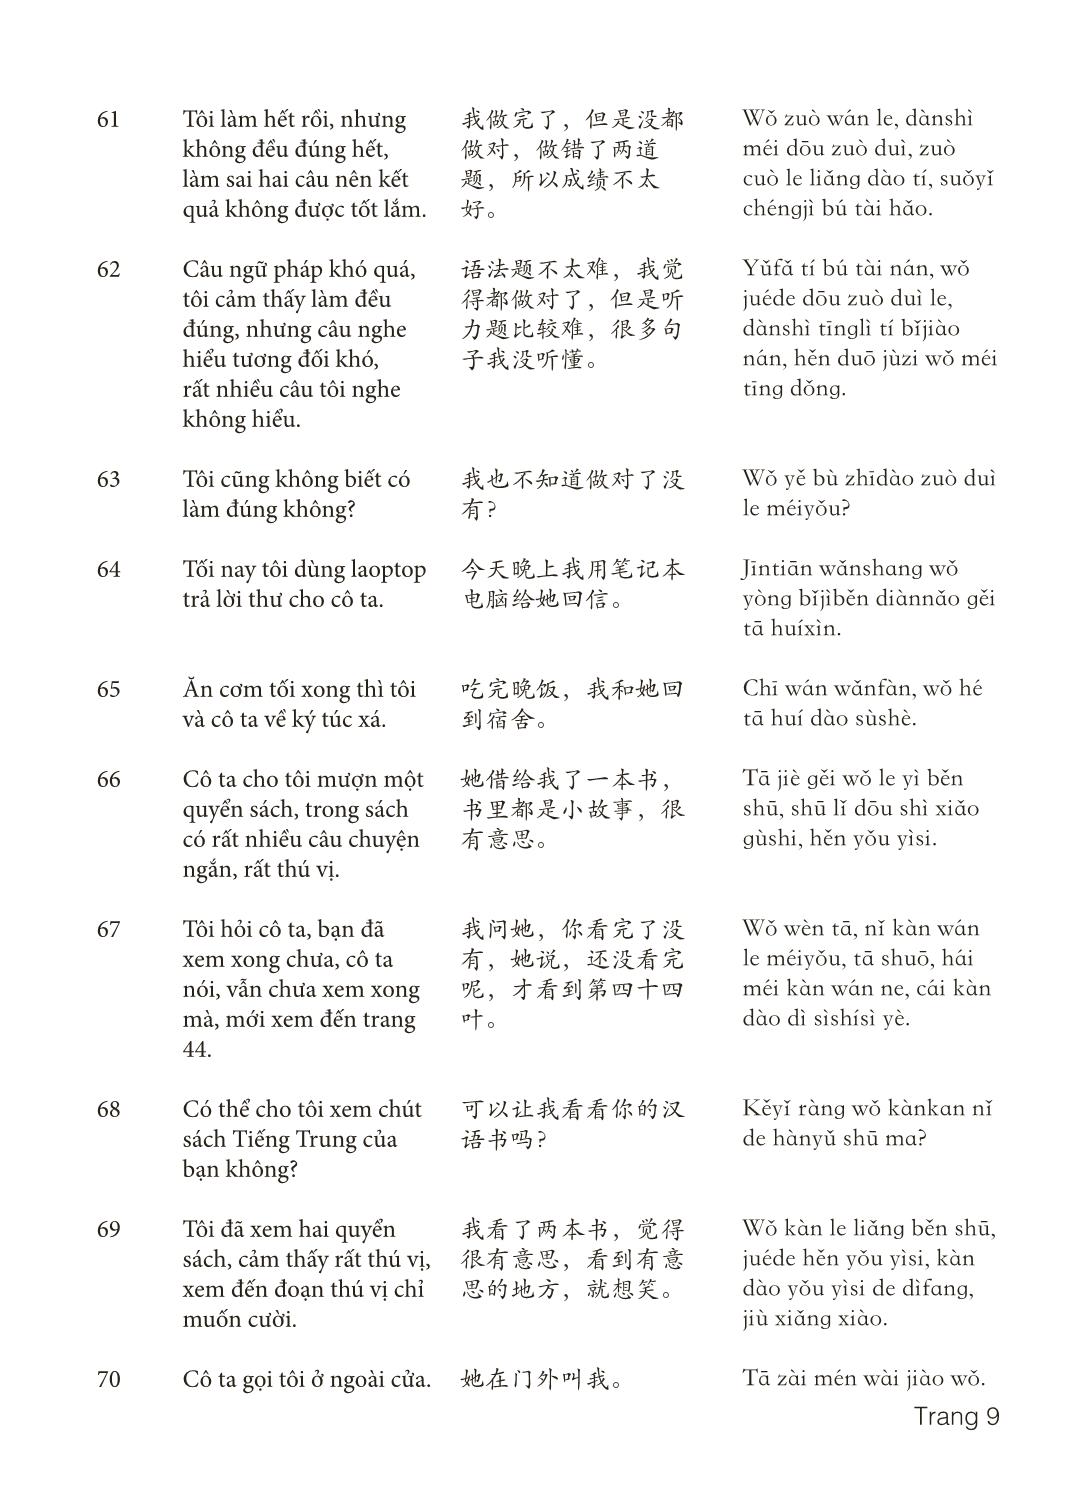 3000 Câu đàm thoại tiếng Hoa - Phần 12 trang 9